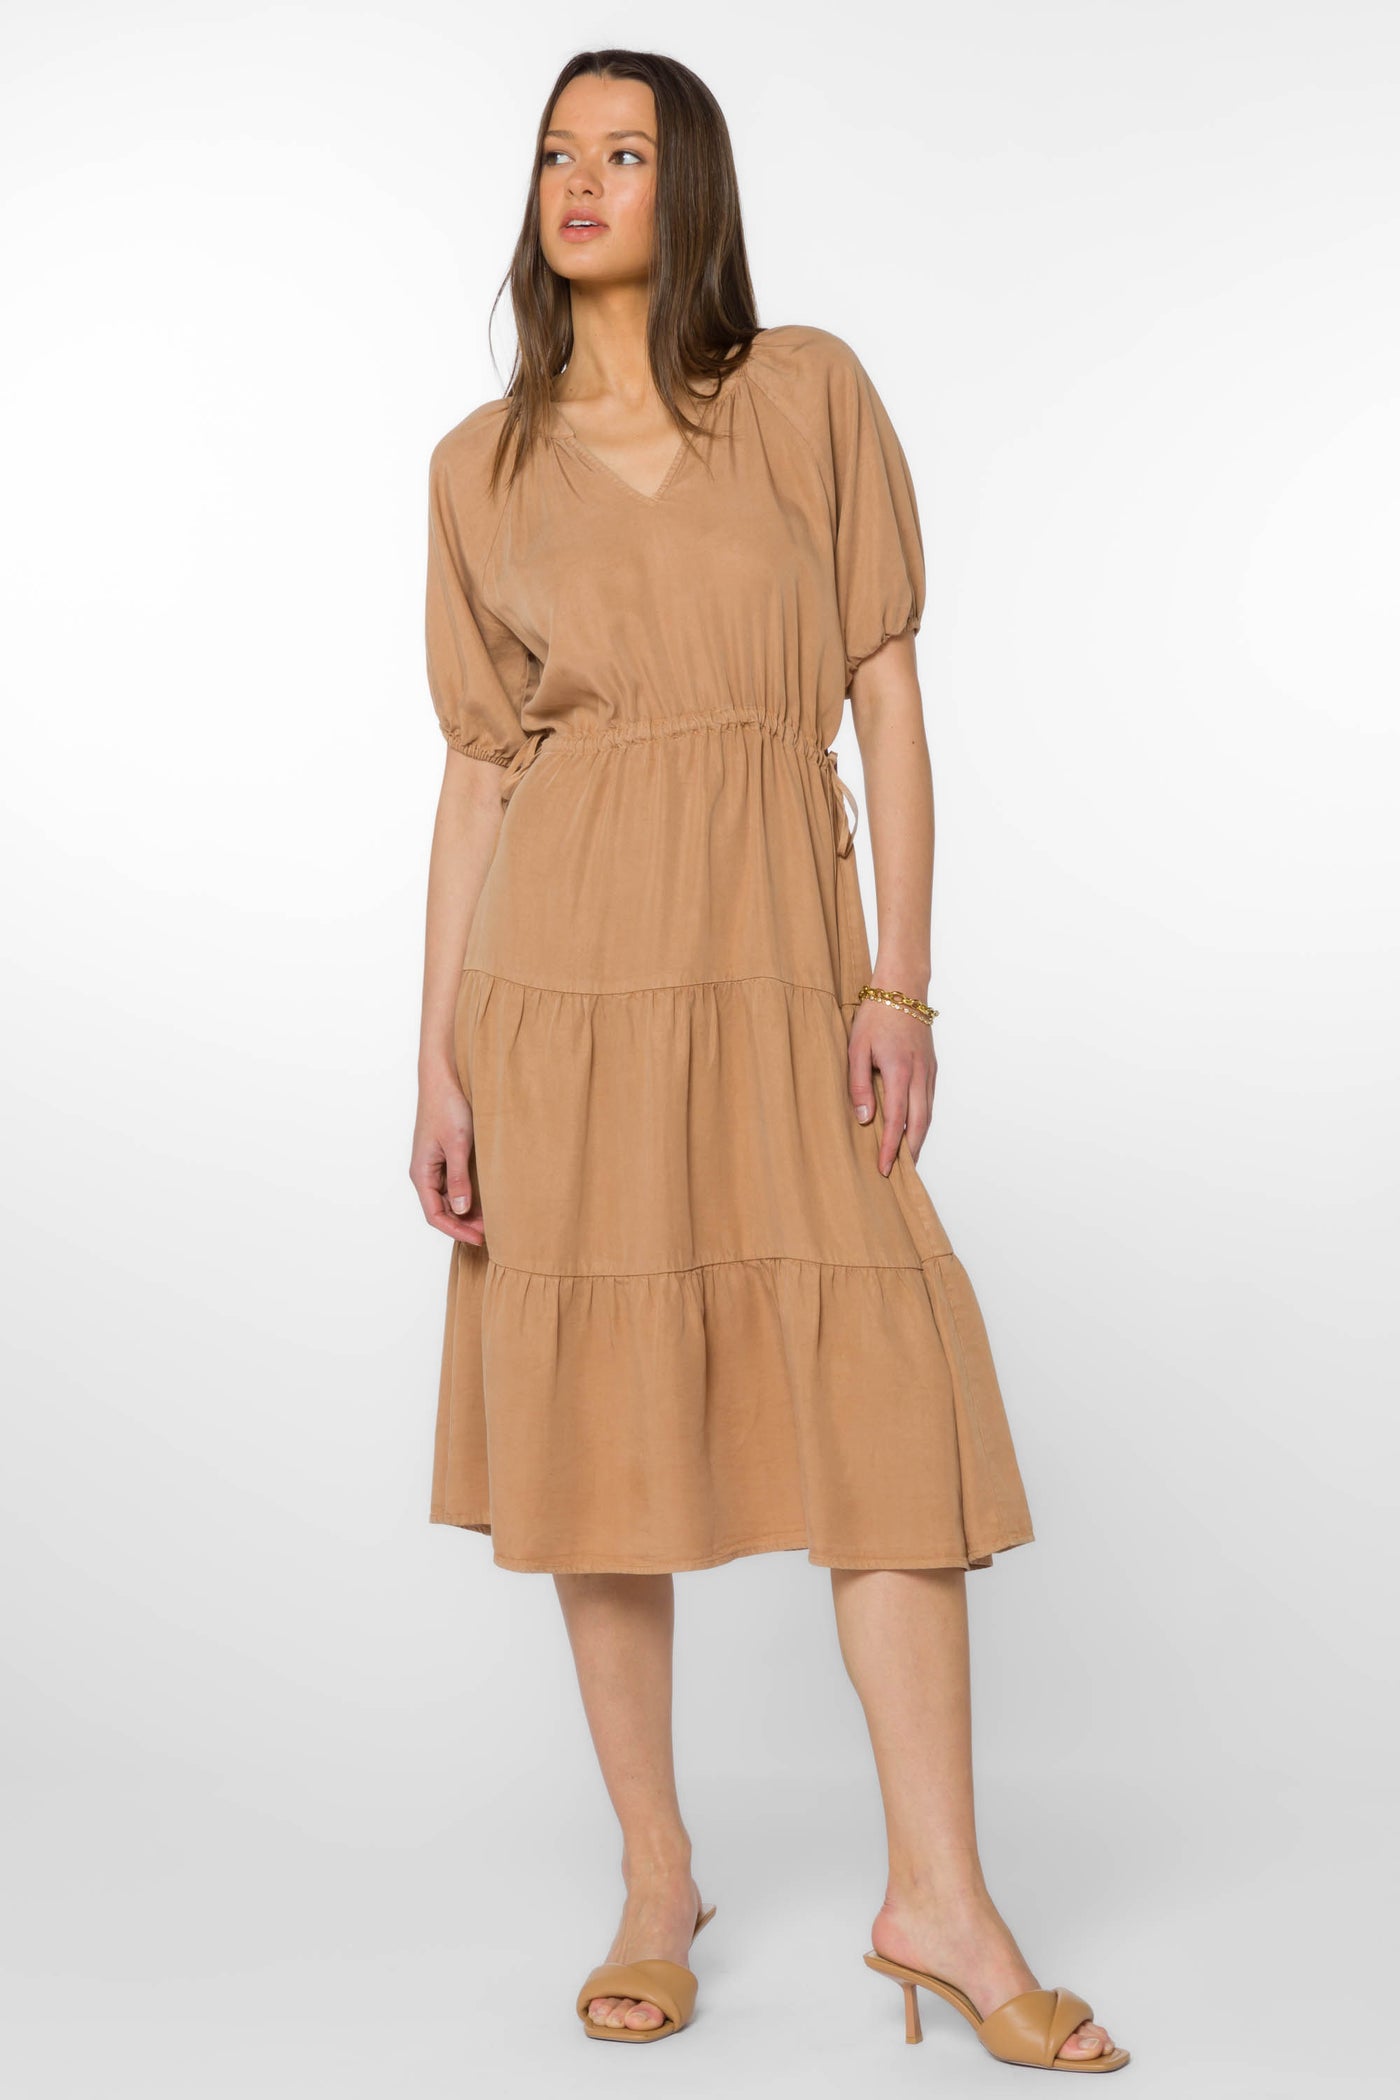 Cassie Camel Dress - Dresses - Velvet Heart Clothing